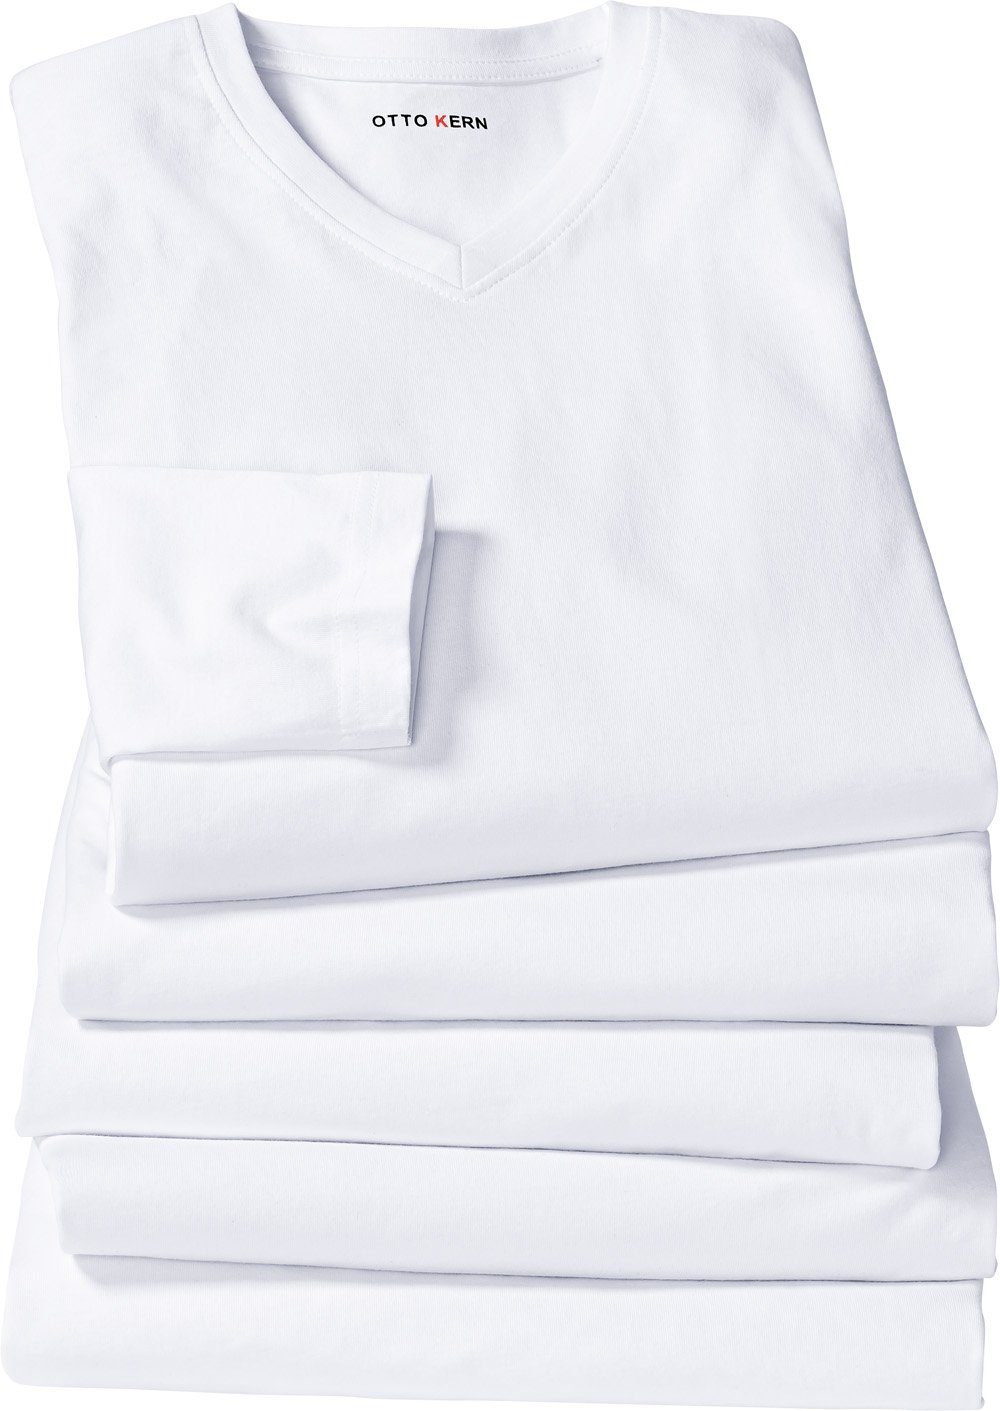 Kern Baumwolle hautsympathischer Langarmshirt formstabiler Kern Otto weiß und 100% aus (5er-Pack)